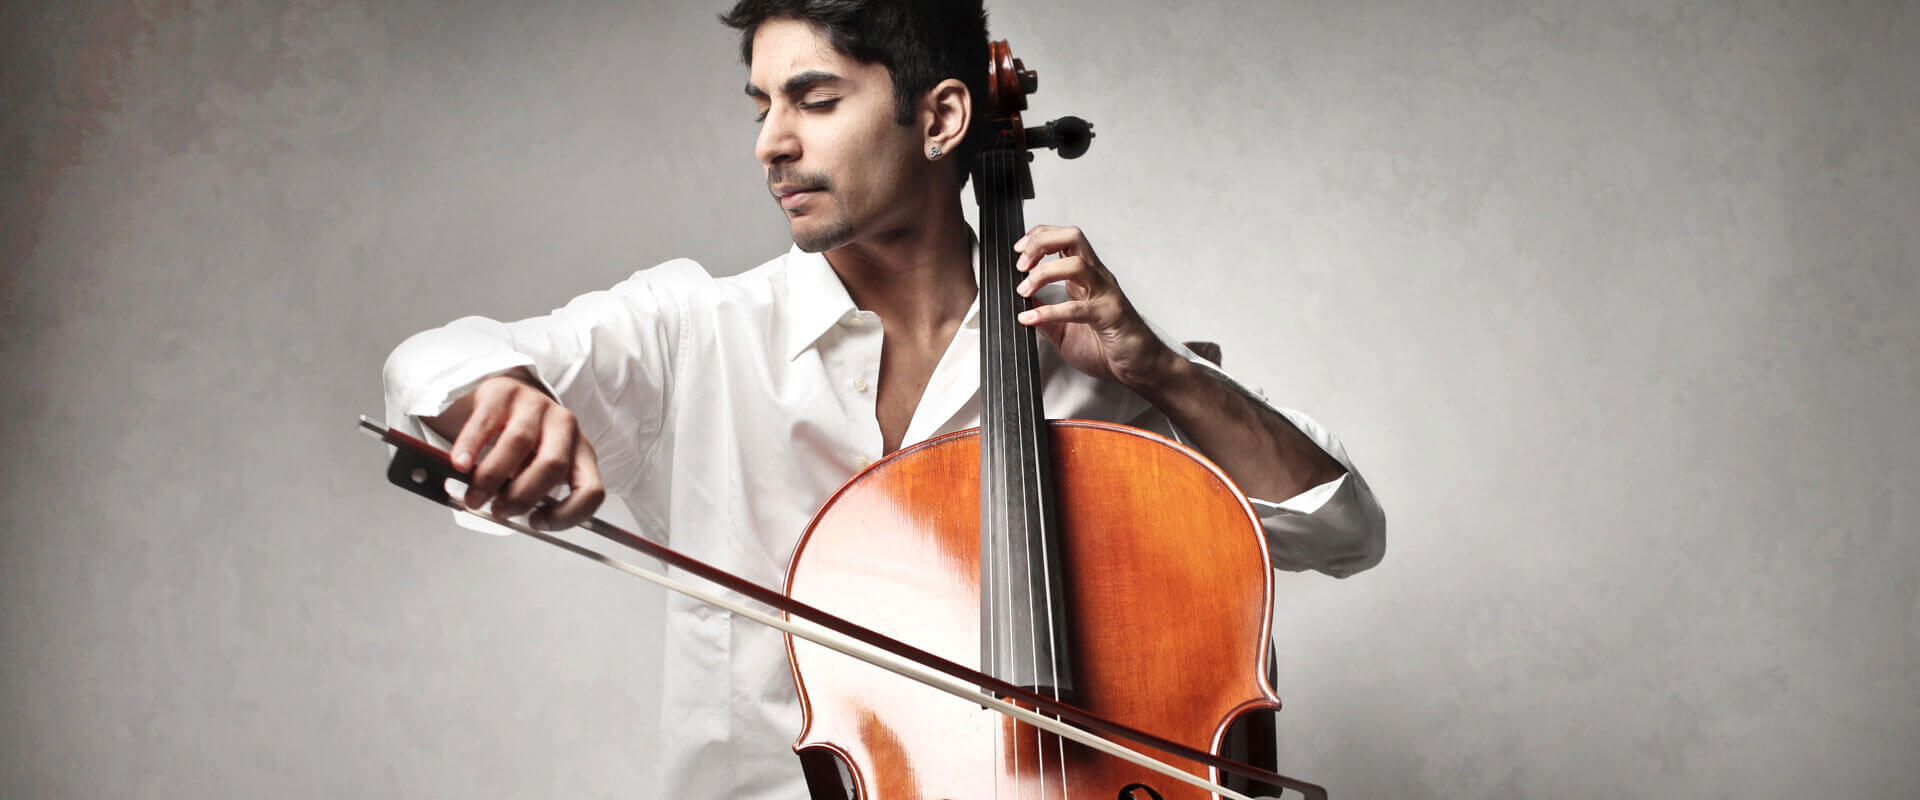 Cello Lessons Samaria, MI